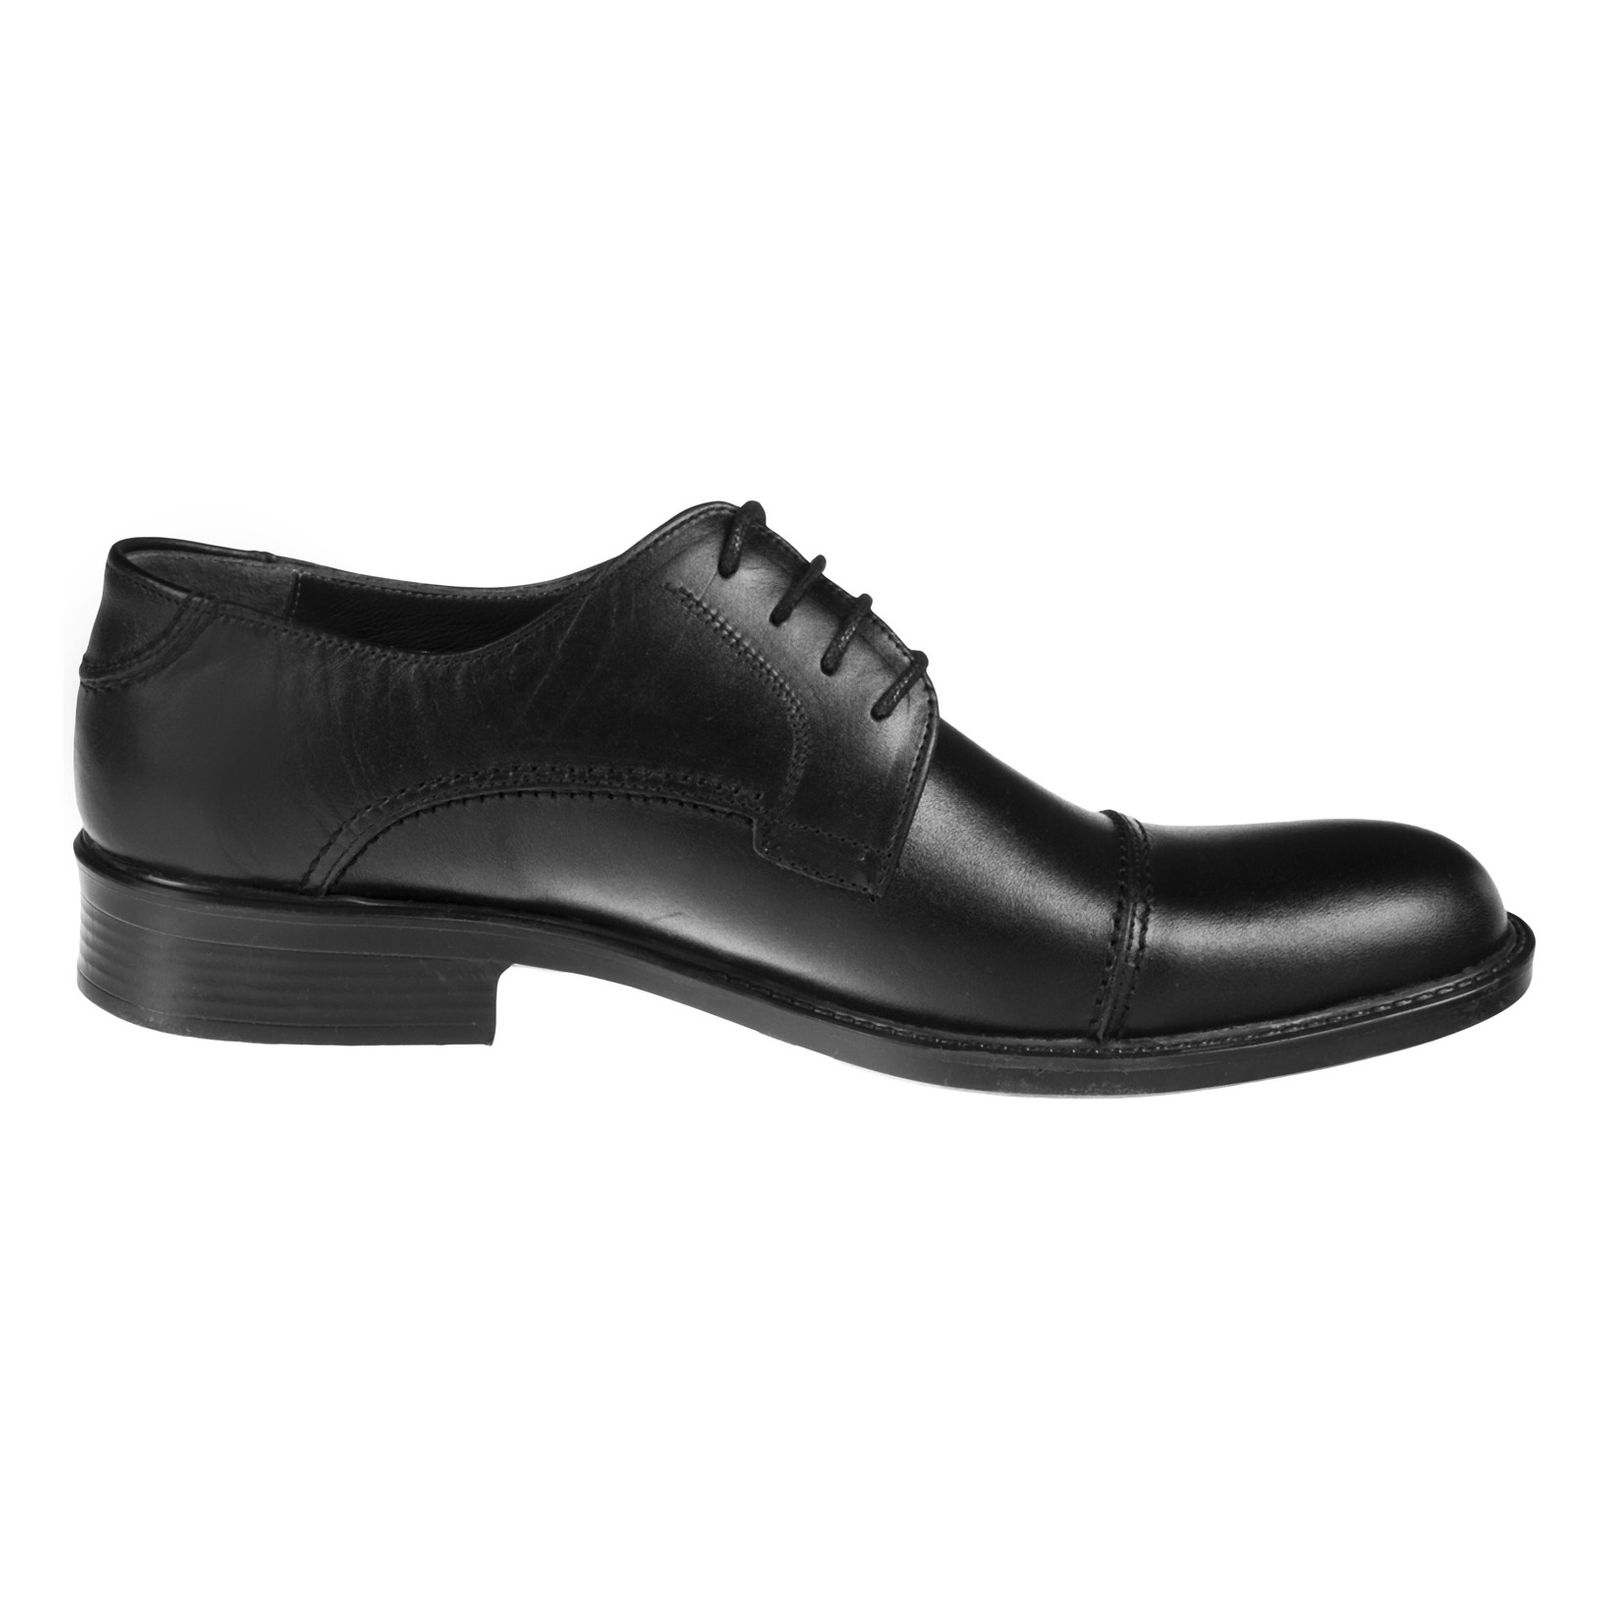 کفش مردانه دلفارد مدل 7219c503-101 - مشکی - 3